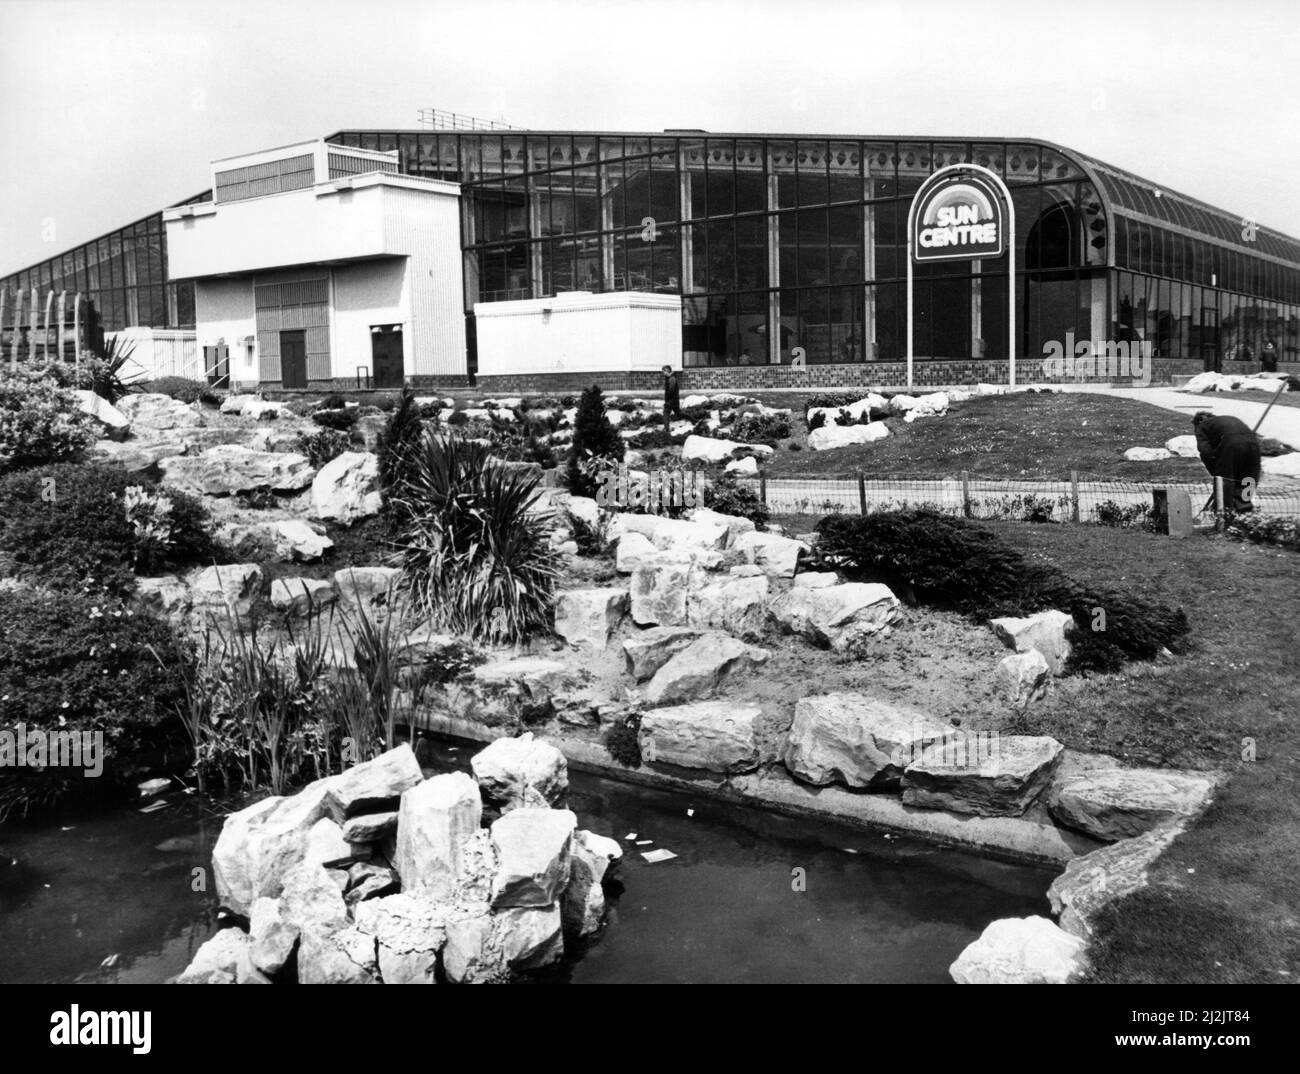 Rhyl Sun Center, Rhyl, pays de Galles du Nord. Entouré par les jardins fleuris de la promenade. Vers 1987. Banque D'Images